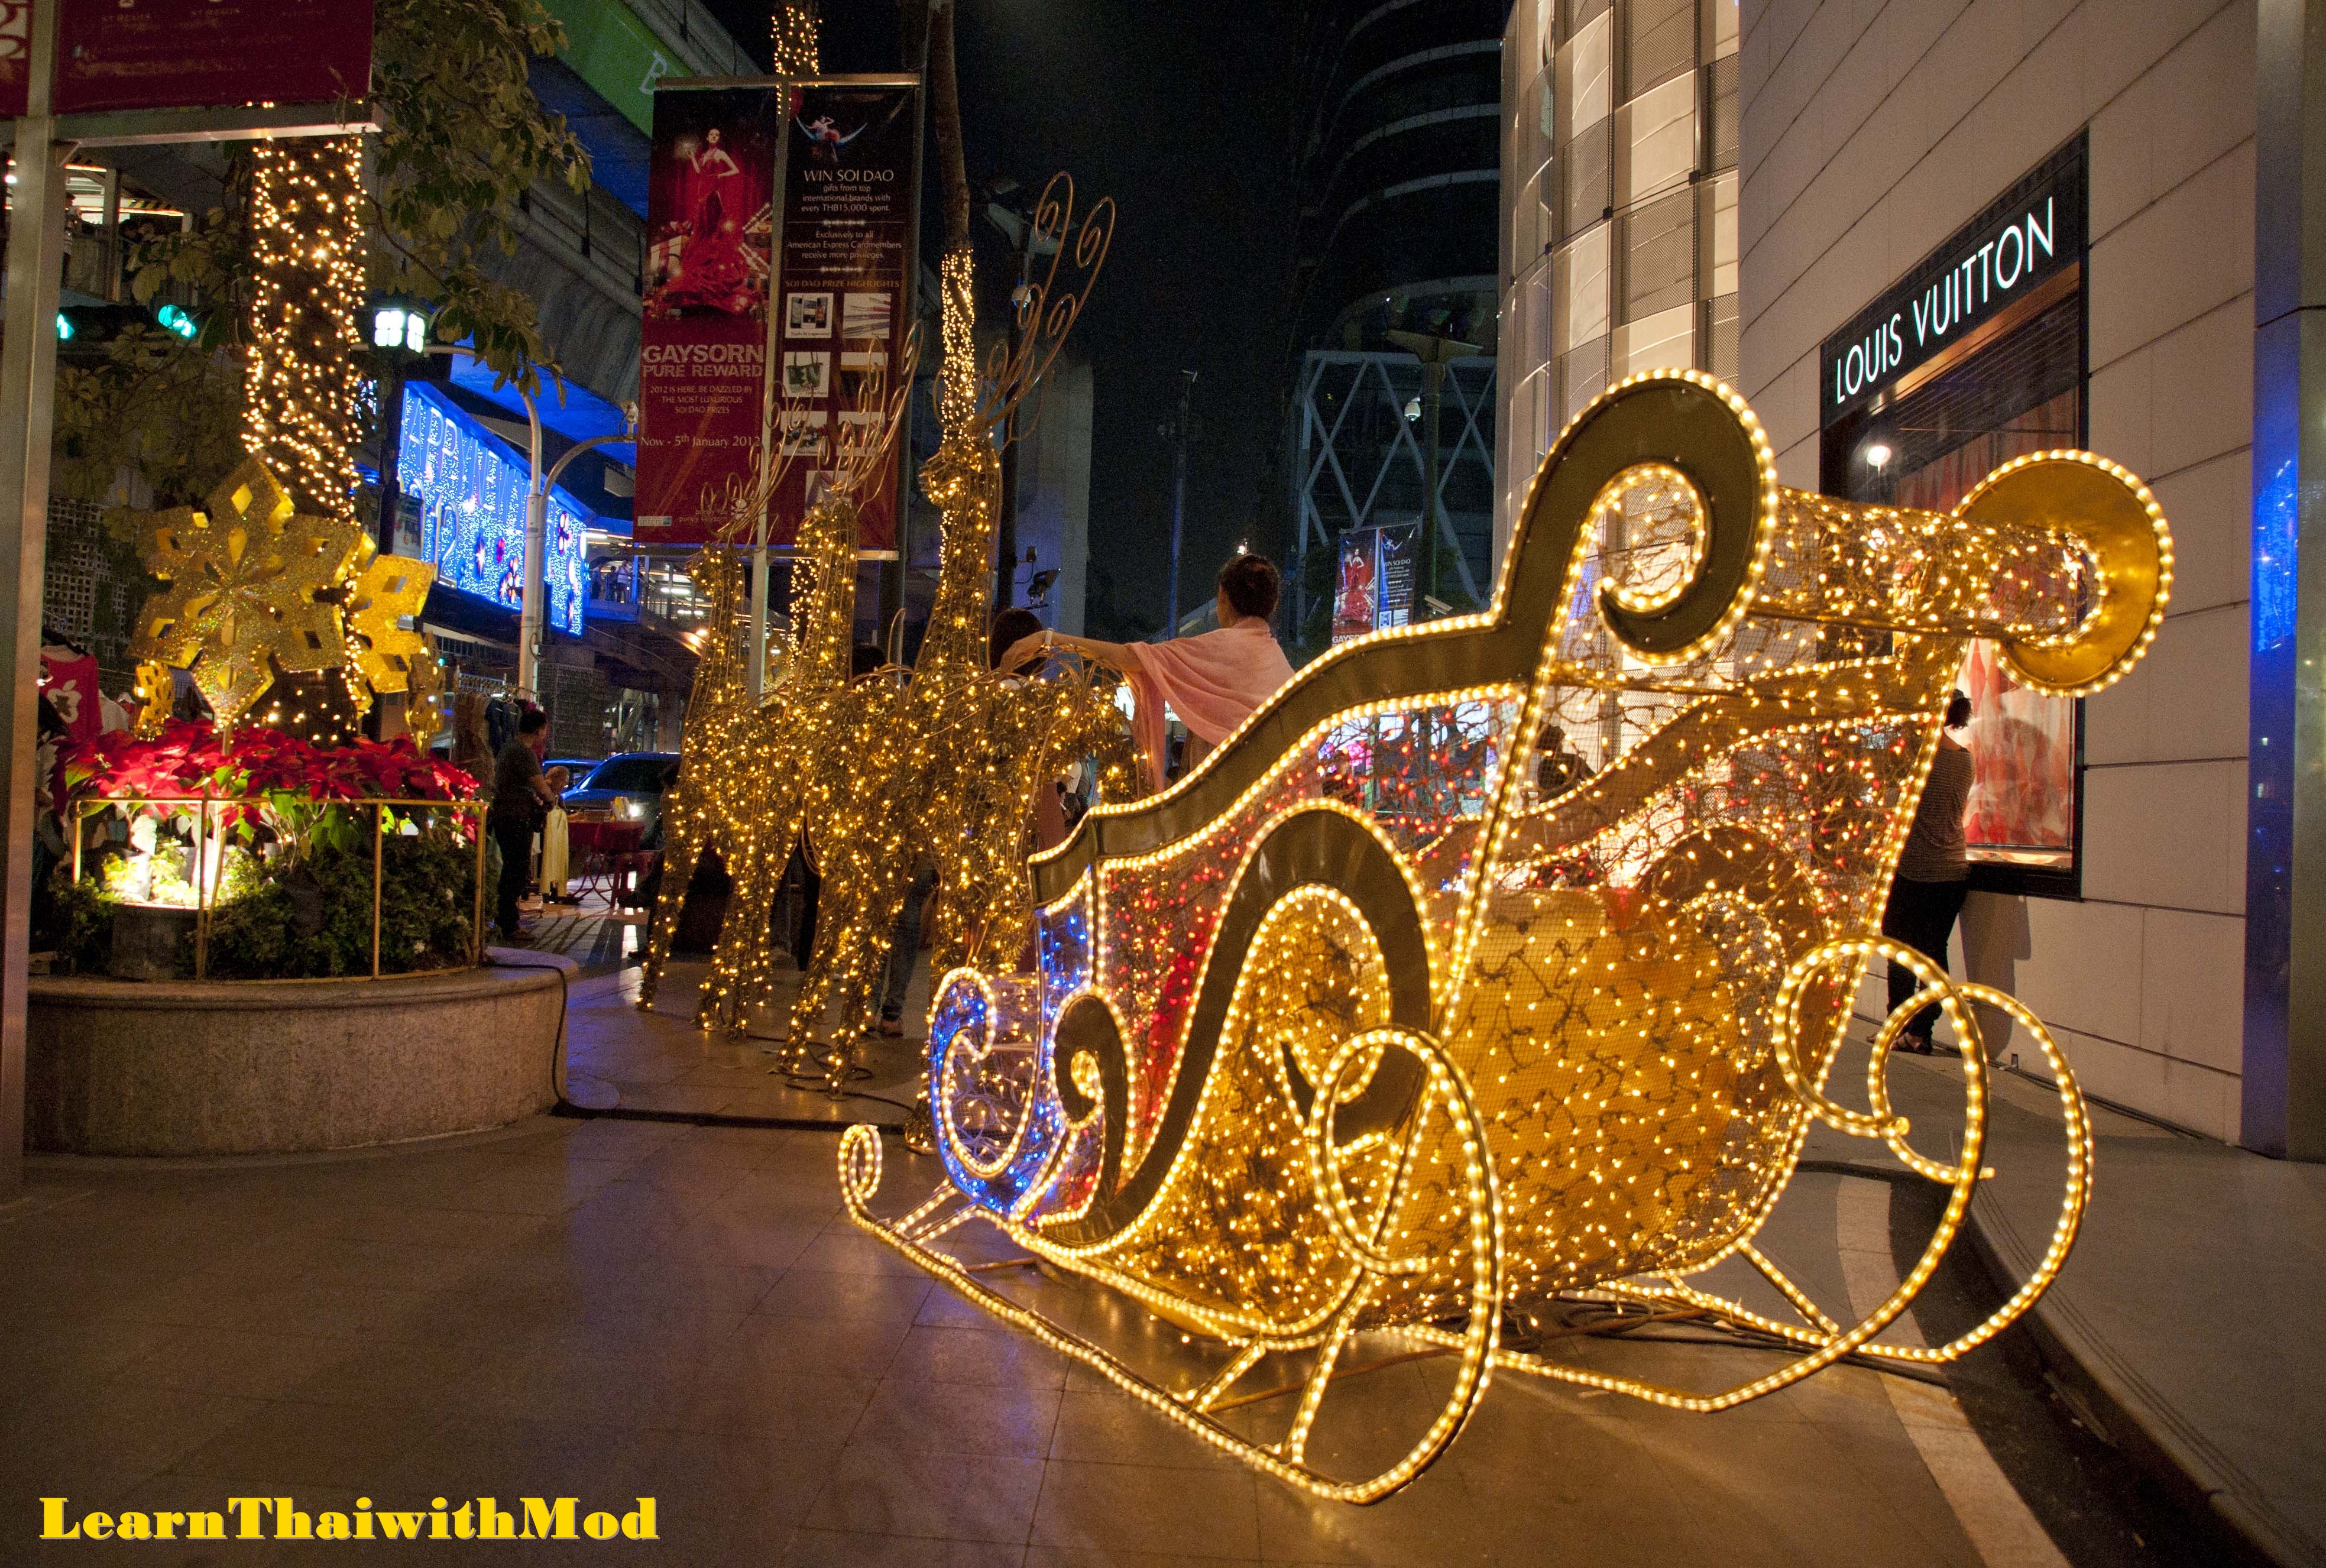 Bangkok’s Christmas Lights